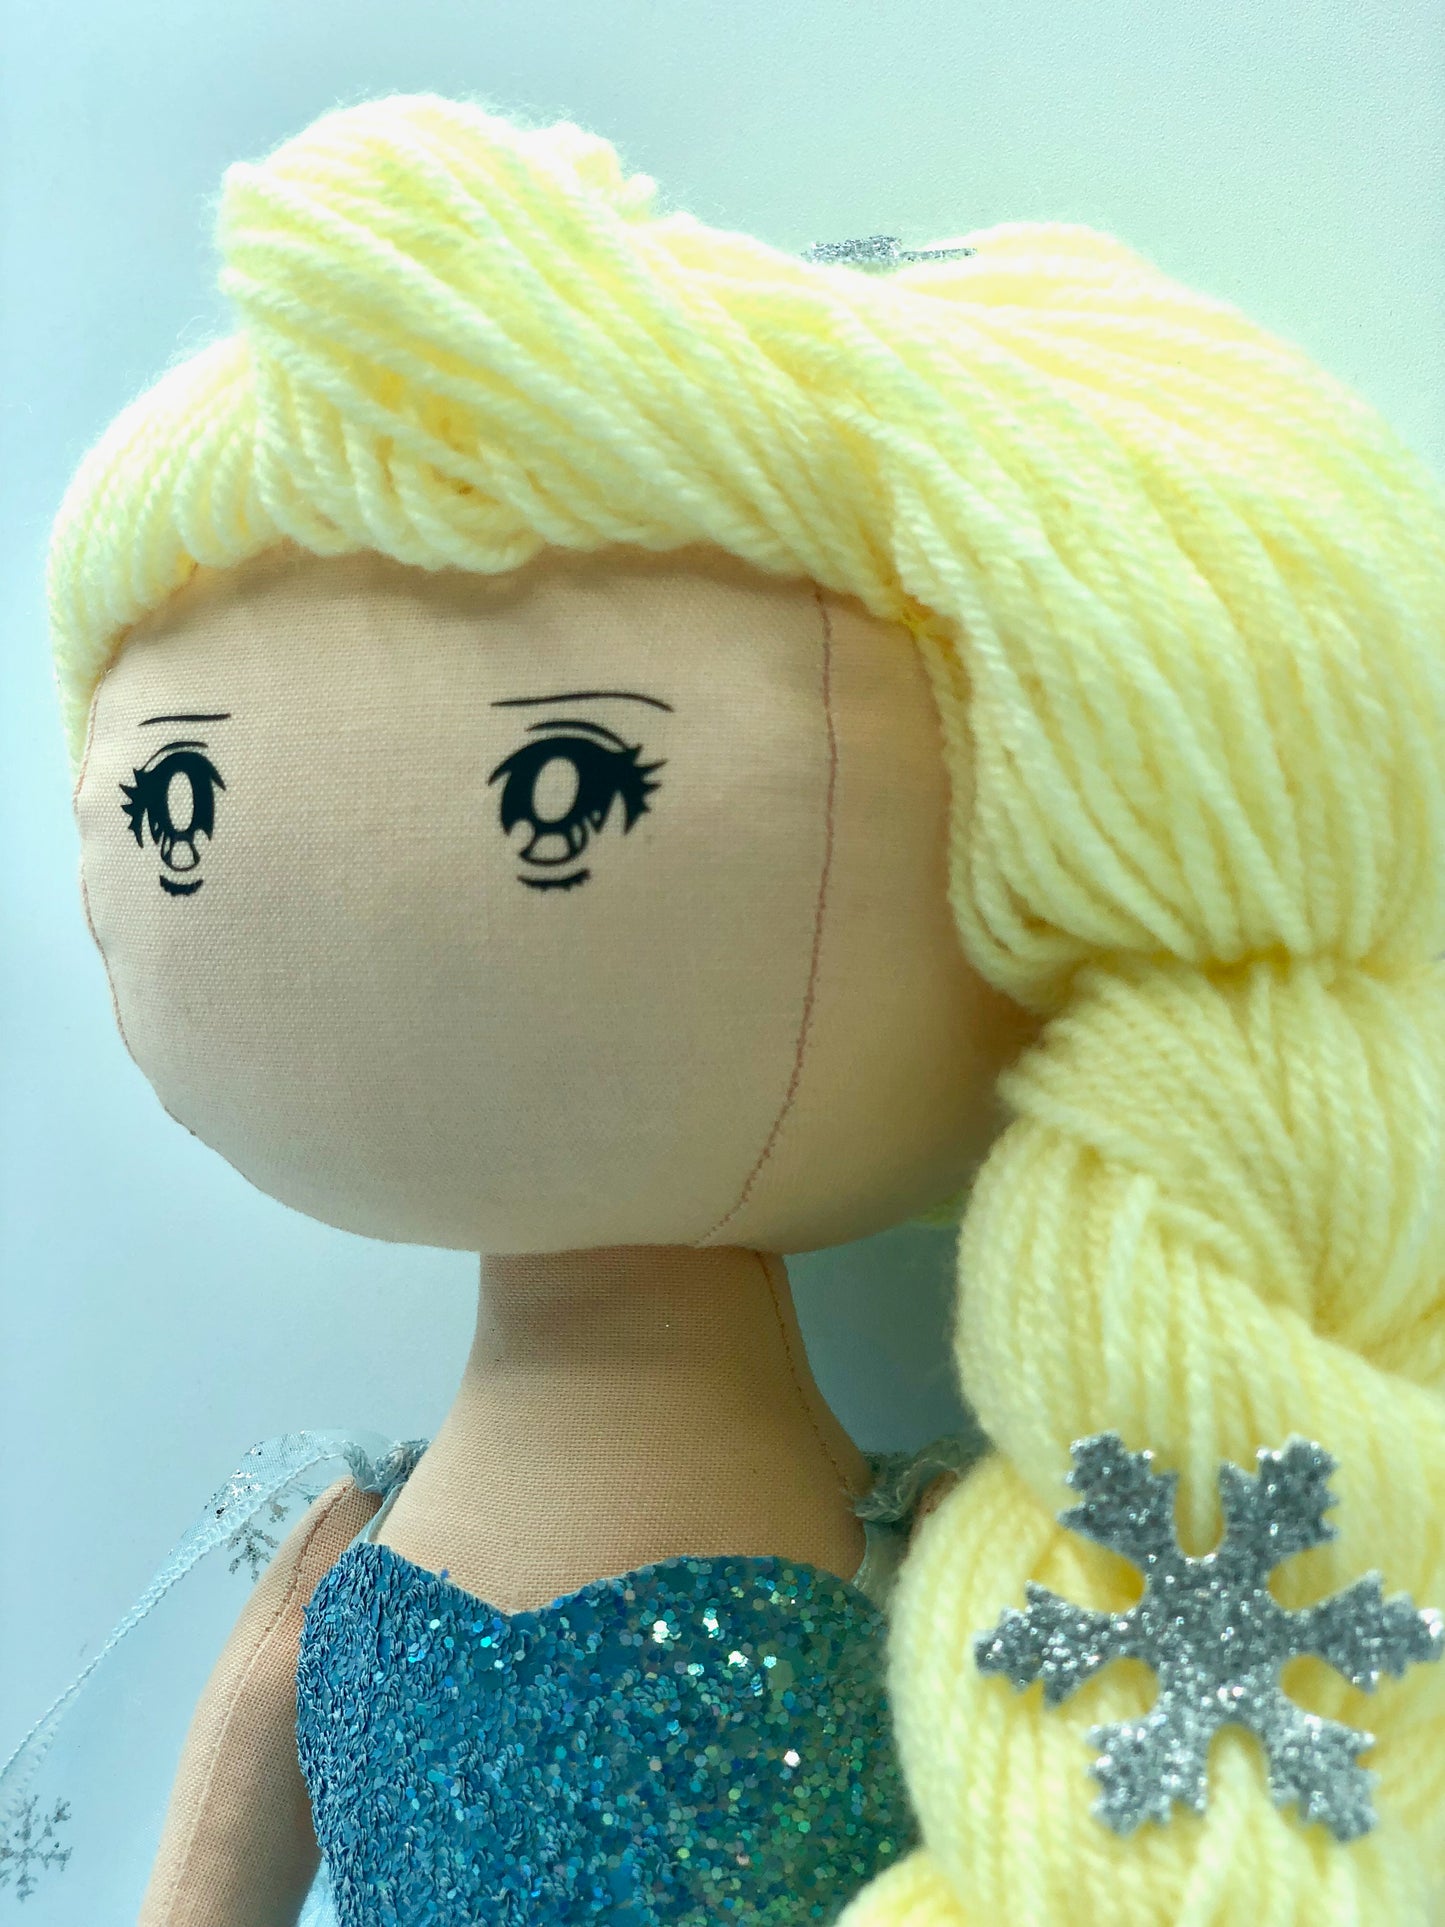 COLLECTION Poupée Elsa, la reine des neiges